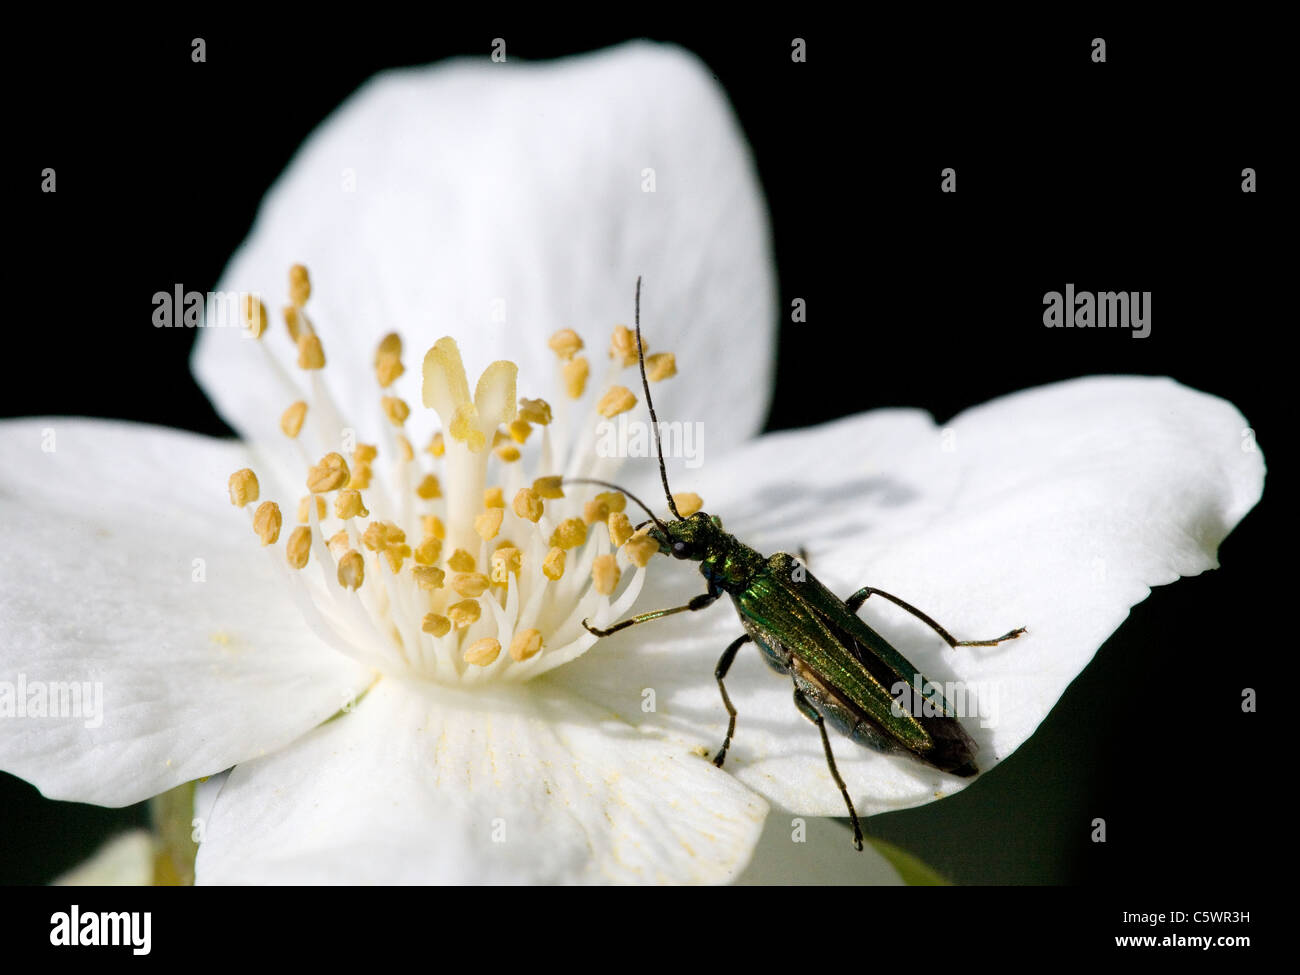 Fleur femelle pattes épaisses Beetle Oedemera nobilis seule femelle adulte mange une fleur Dorset, UK Banque D'Images